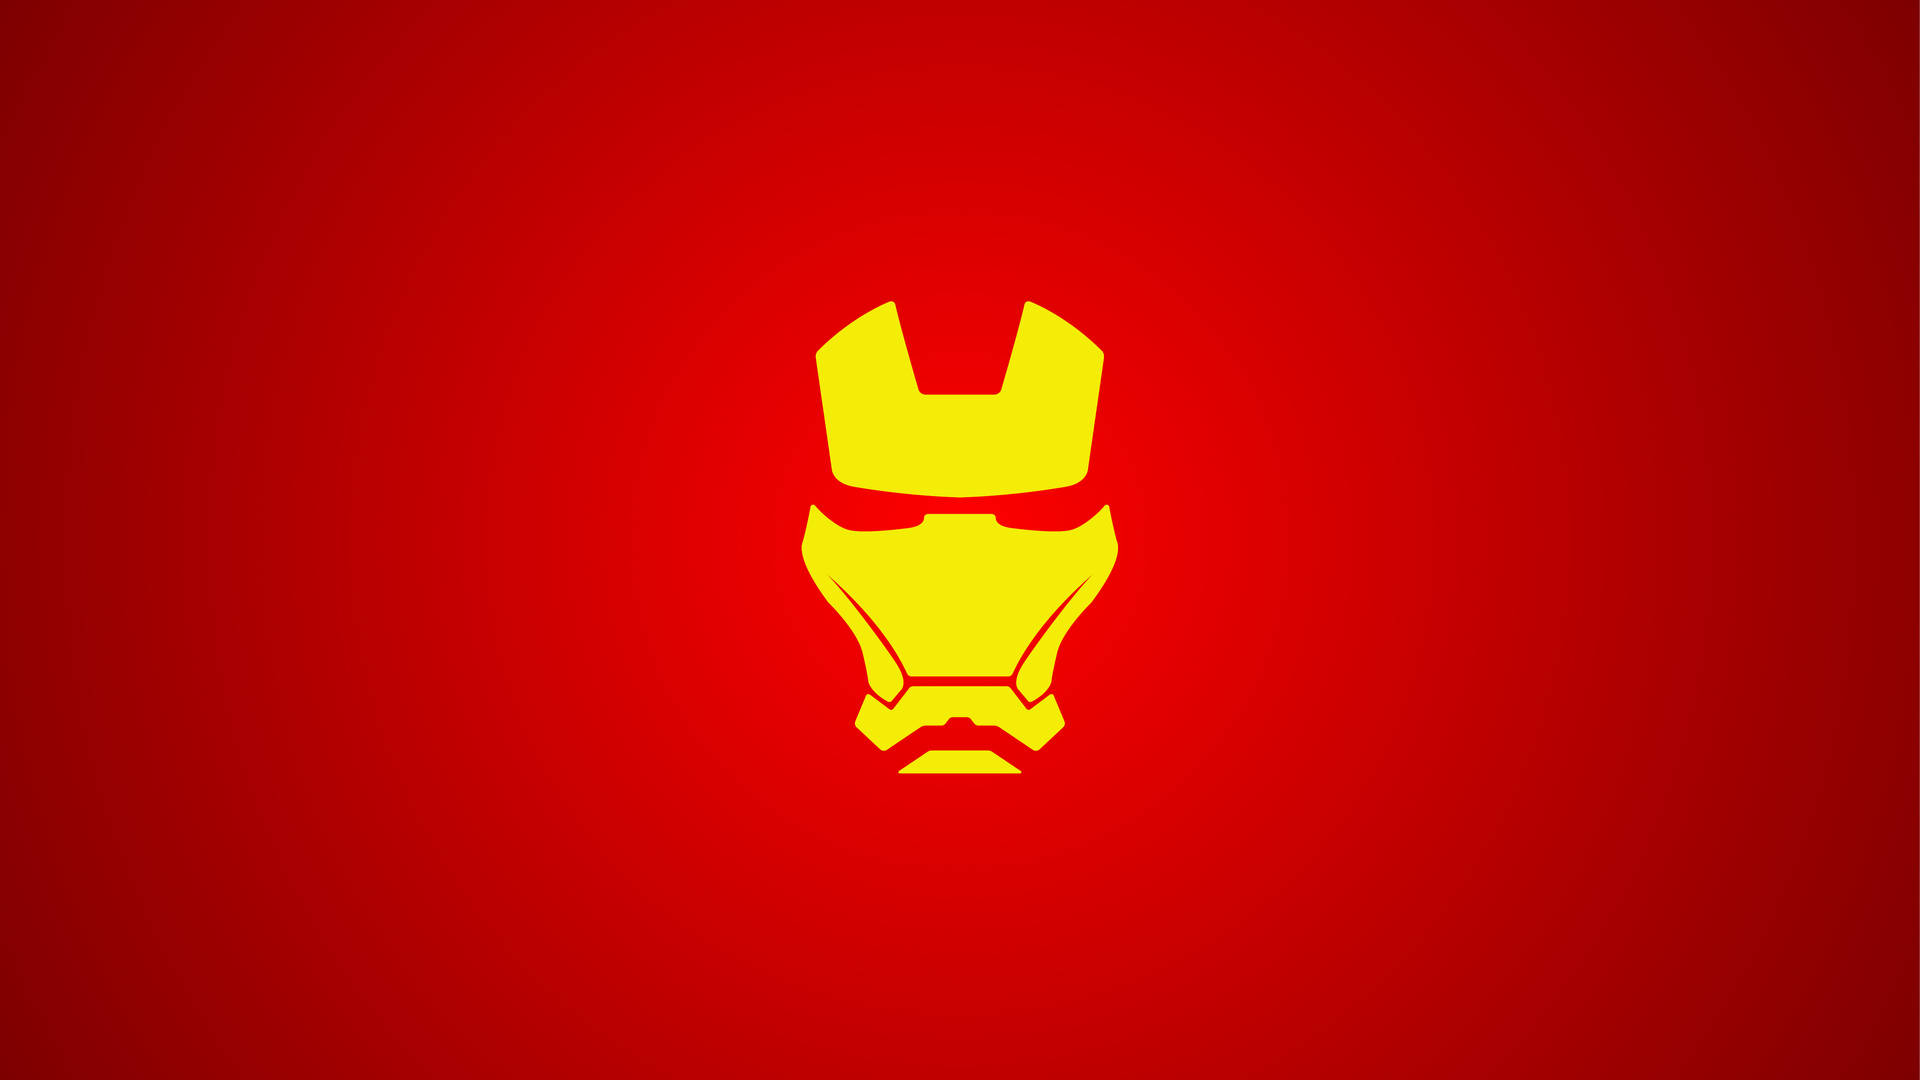 Minimalist Cool Iron Man Mask Background